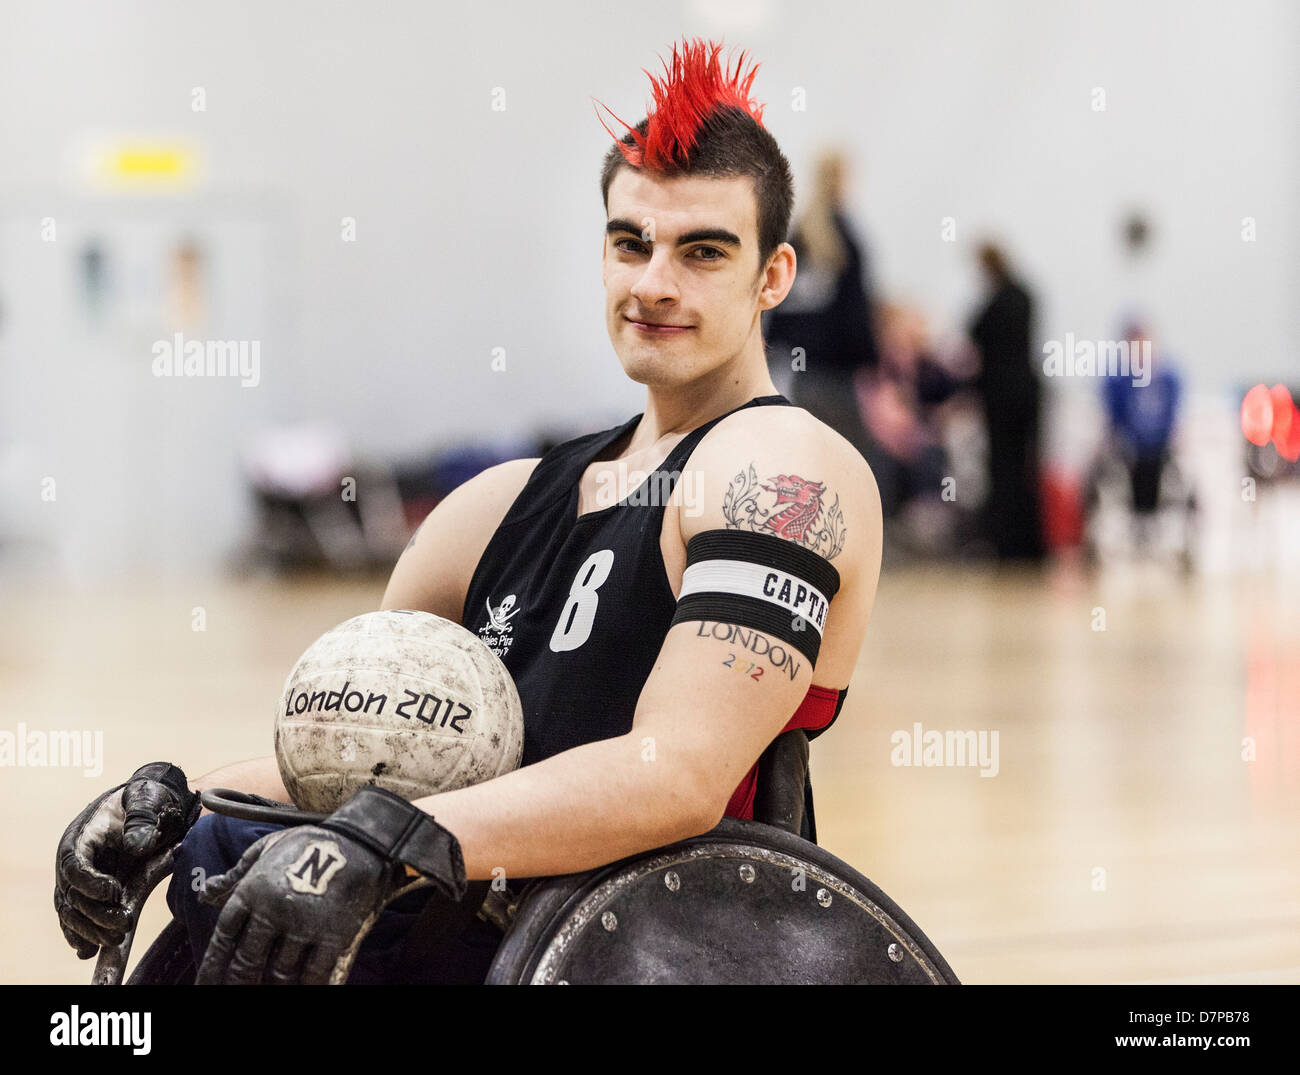 David Anthony GBWR, joueur de rugby en fauteuil roulant aux Jeux paralympiques, l'équipe Go, Londres 2012 Banque D'Images